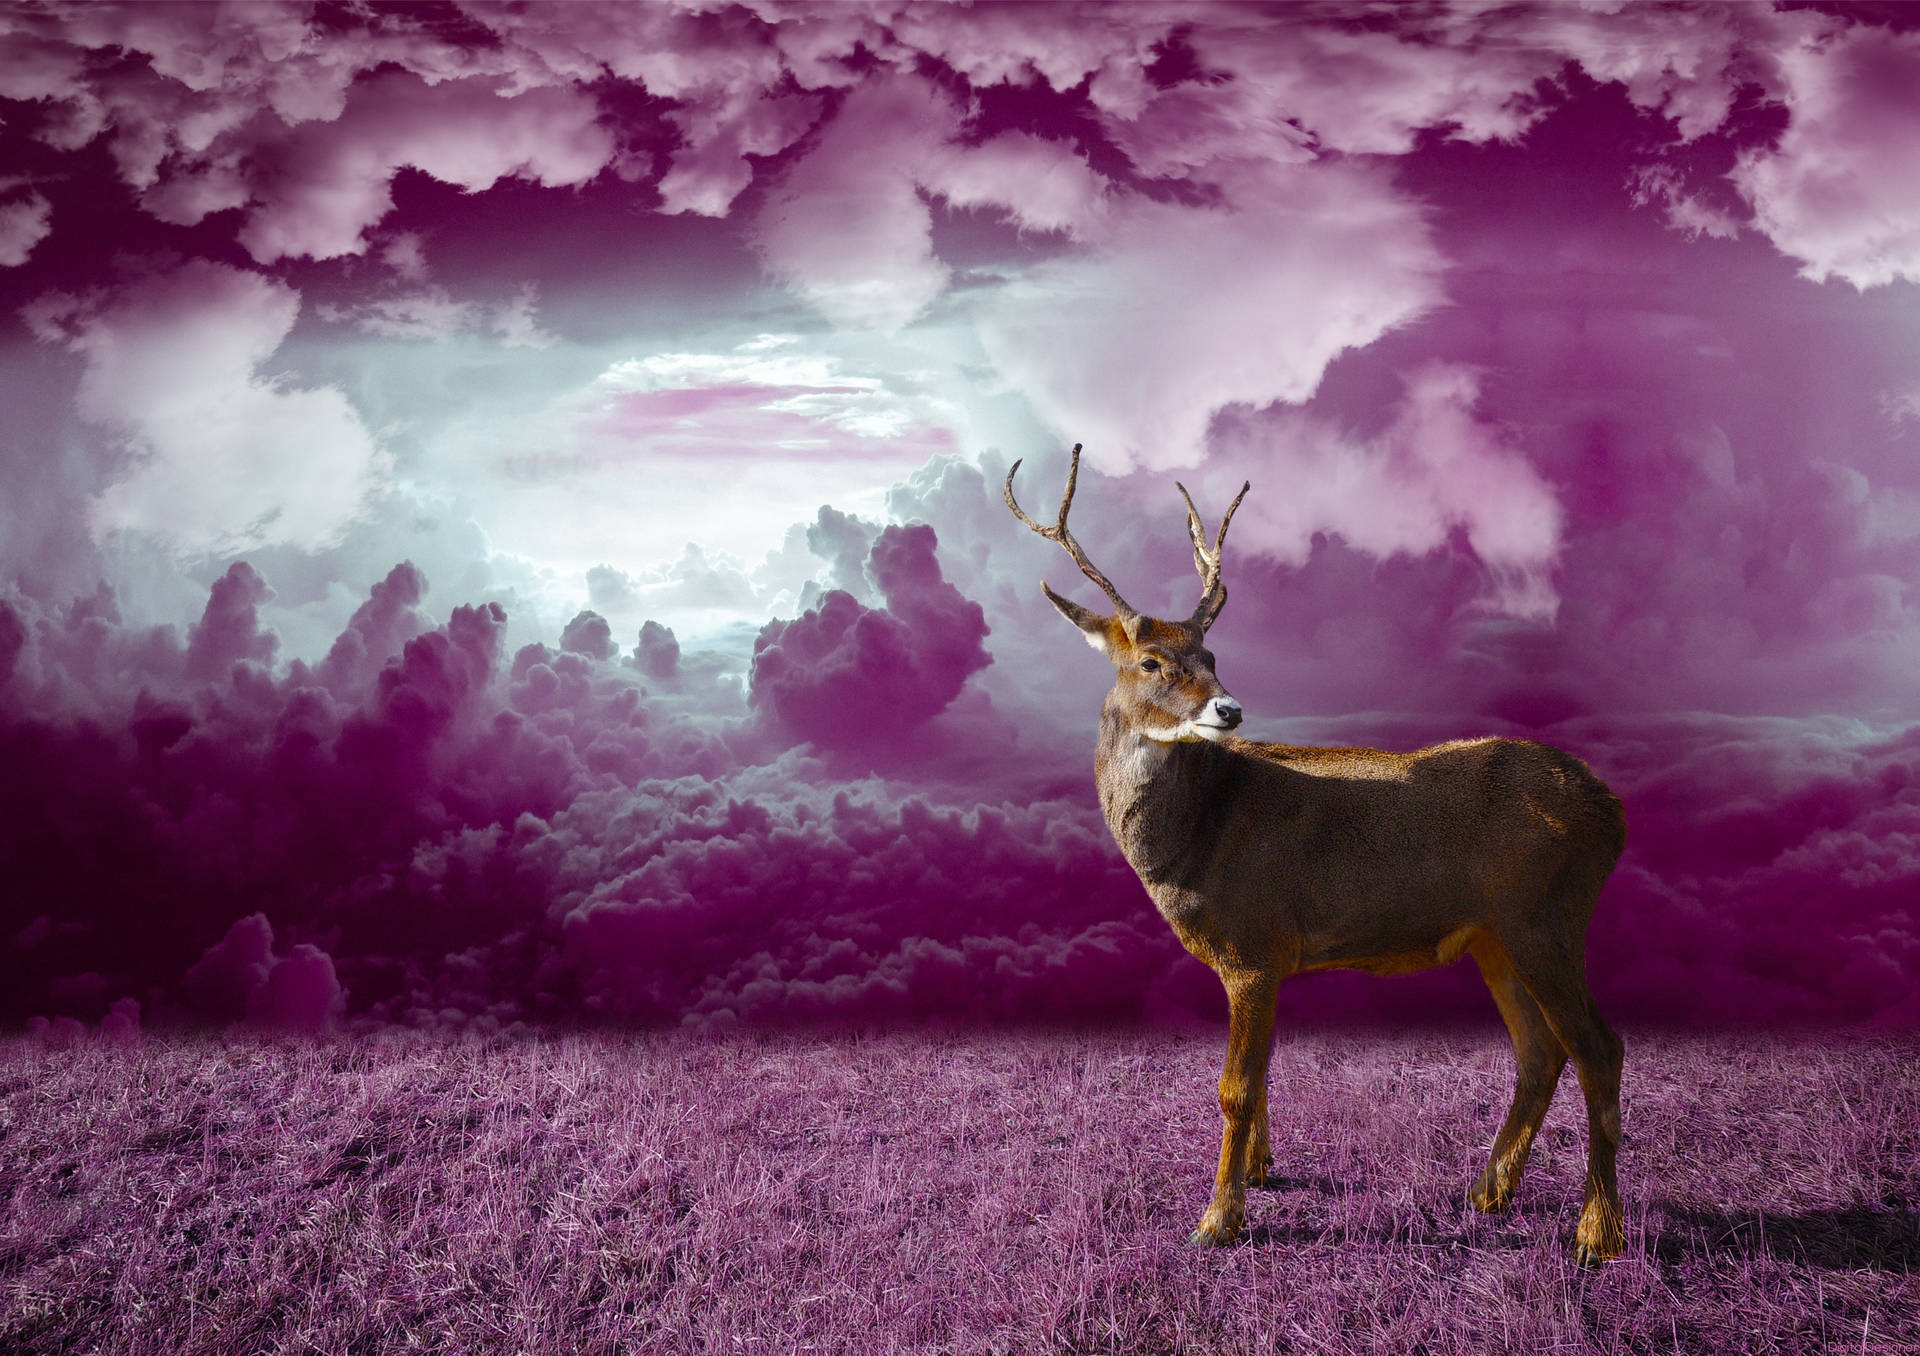 Deer in purple monochrome fantasy art wallpaper.